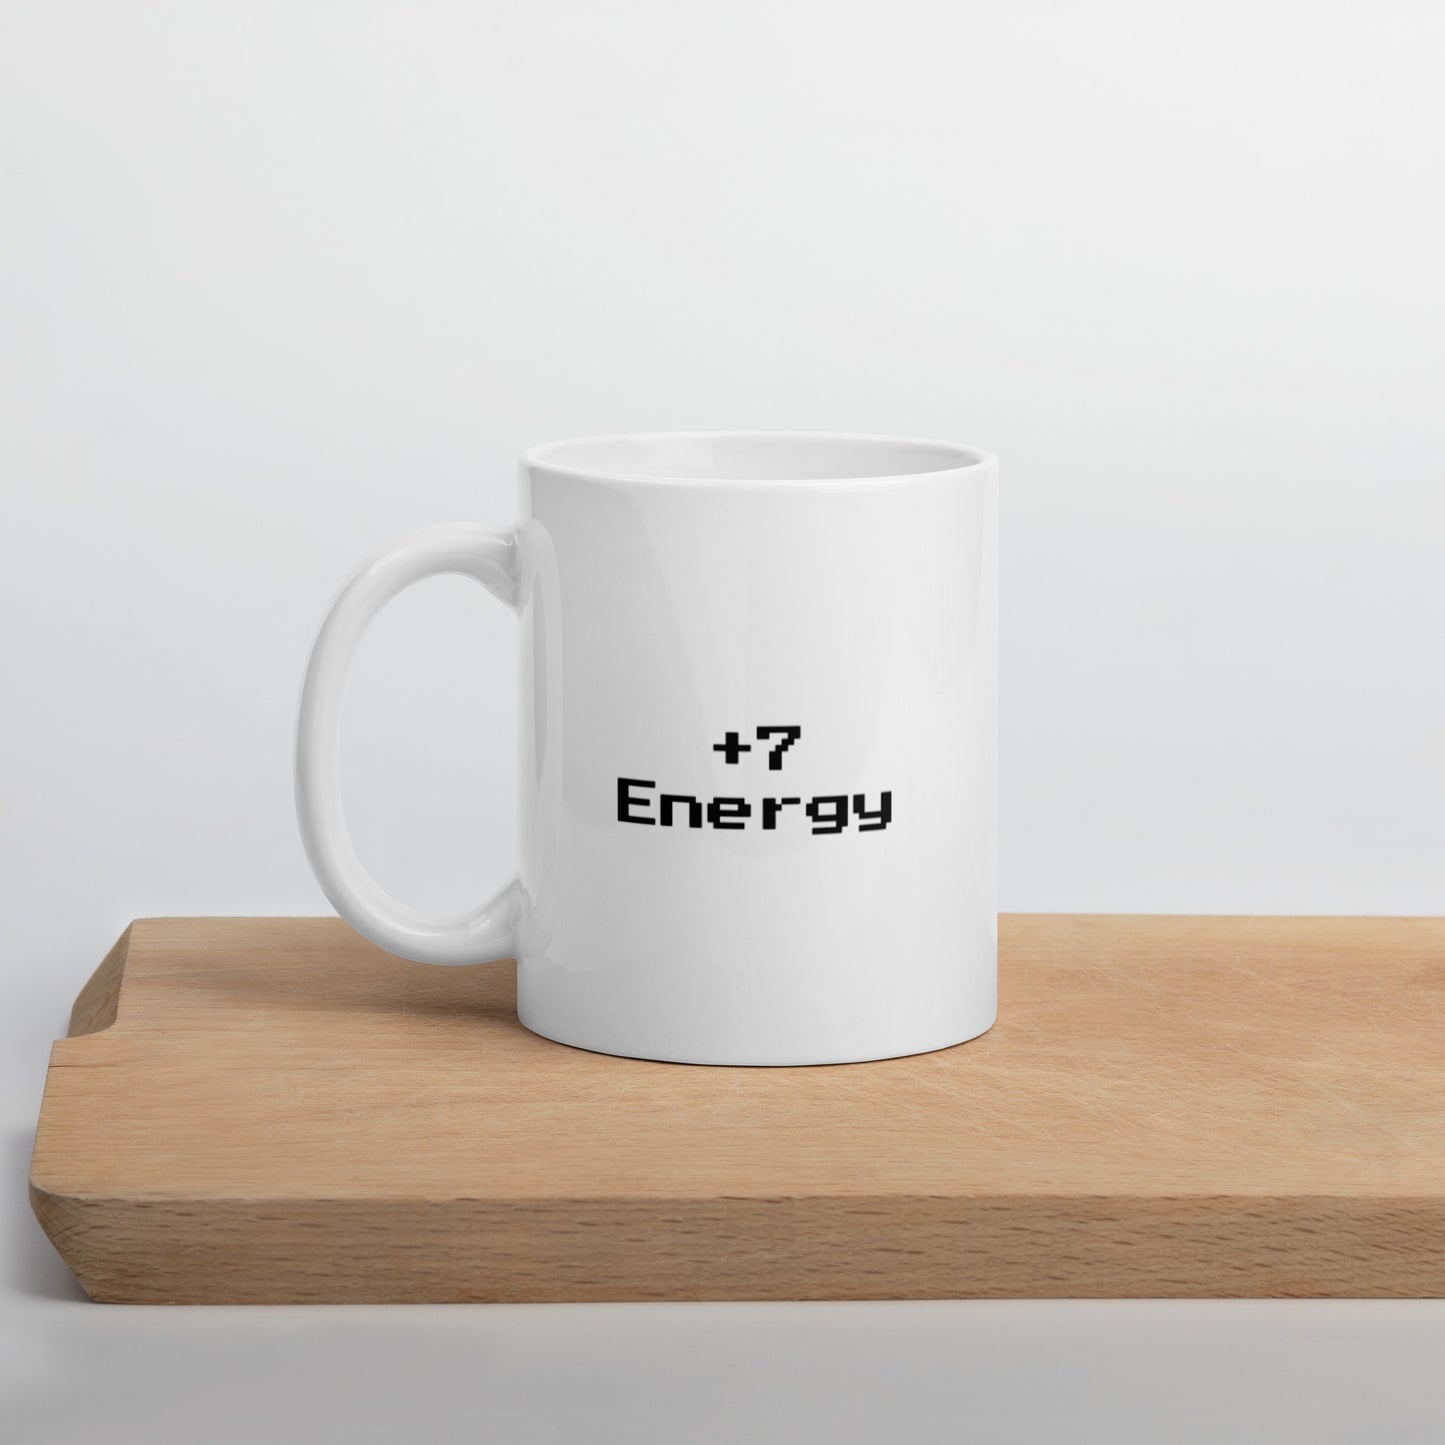 +7 energy - Mug